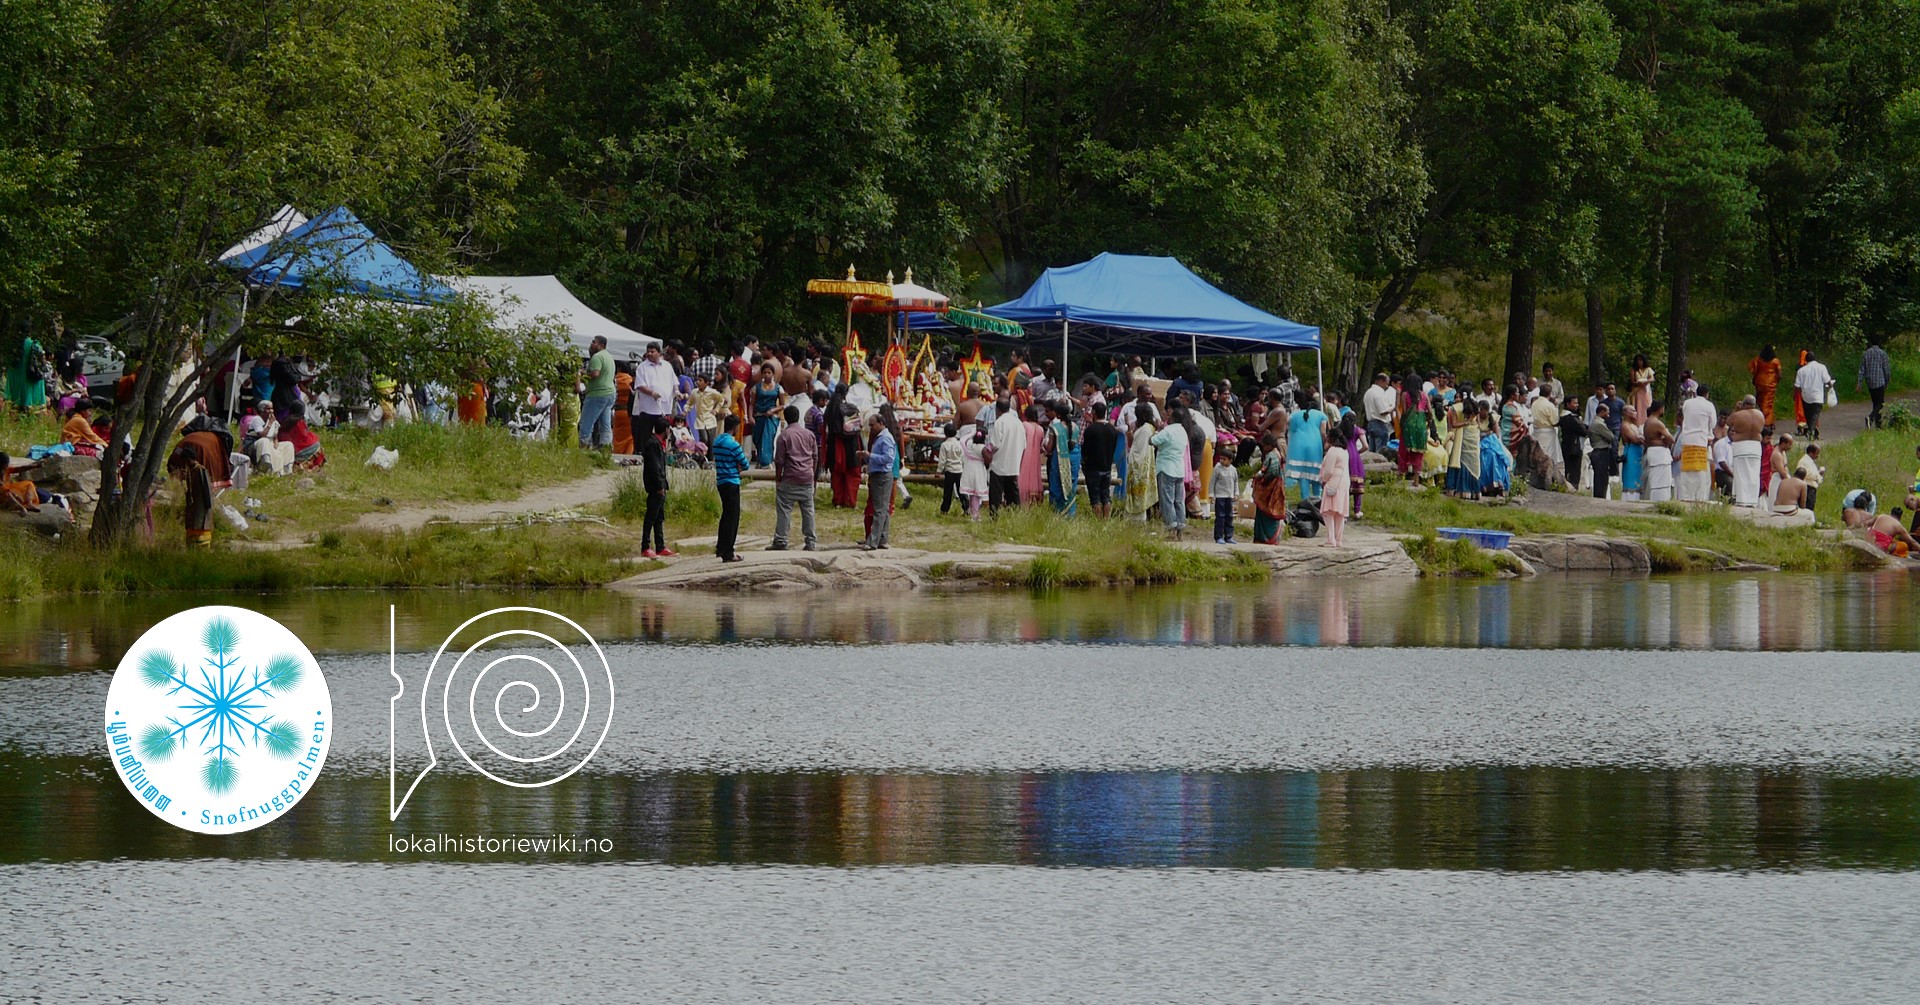 Bilde av en samling mennesker under et festivallignende arrangement ved et vann